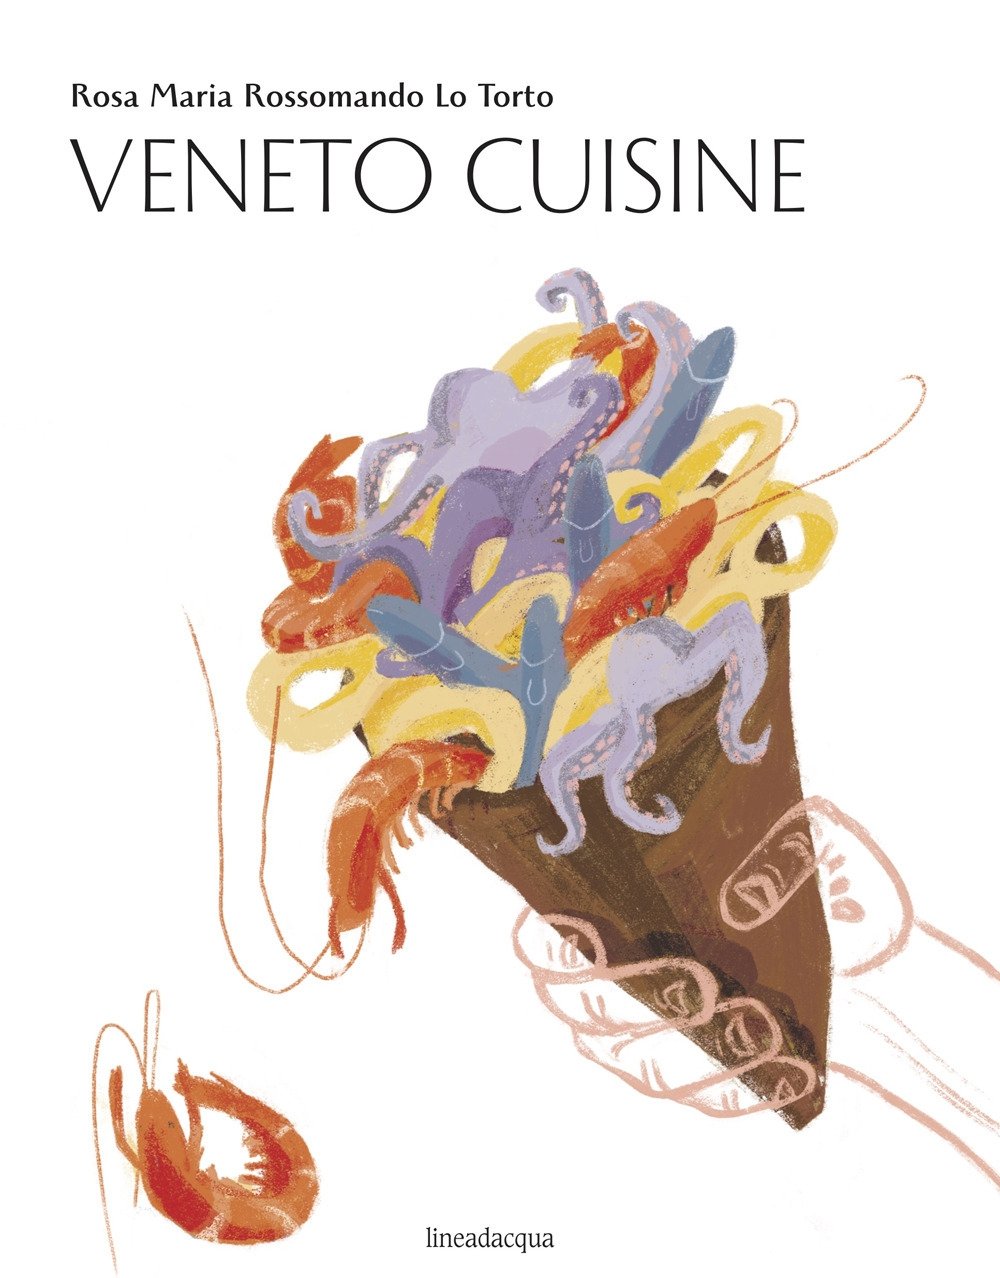 Veneto cuisine, Venezia, Lineadacqua Edizioni, 2020